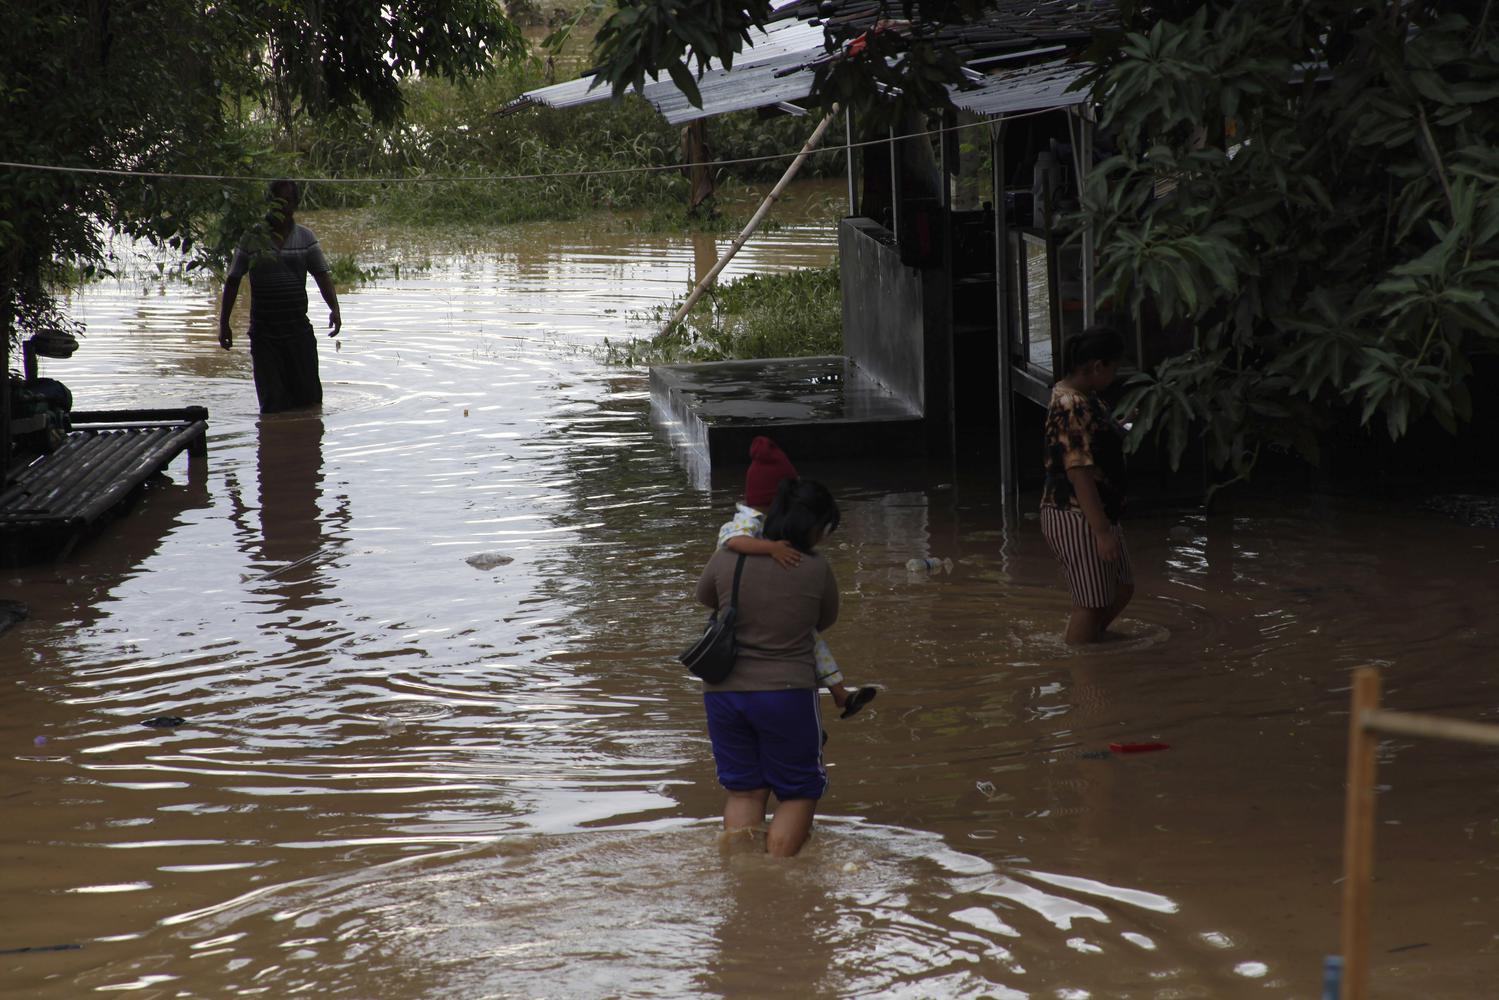 Warga berjalan melintasi banjir yang menggenangi permukiman di Kampung Sewu, Jebres, Solo, Jawa Tengah, Senin (14/12/2020). Puluhan keluarga yang tinggal di sekitar bantaran sungai setempat terdampak luapan air Sungai Bengawan Solo.